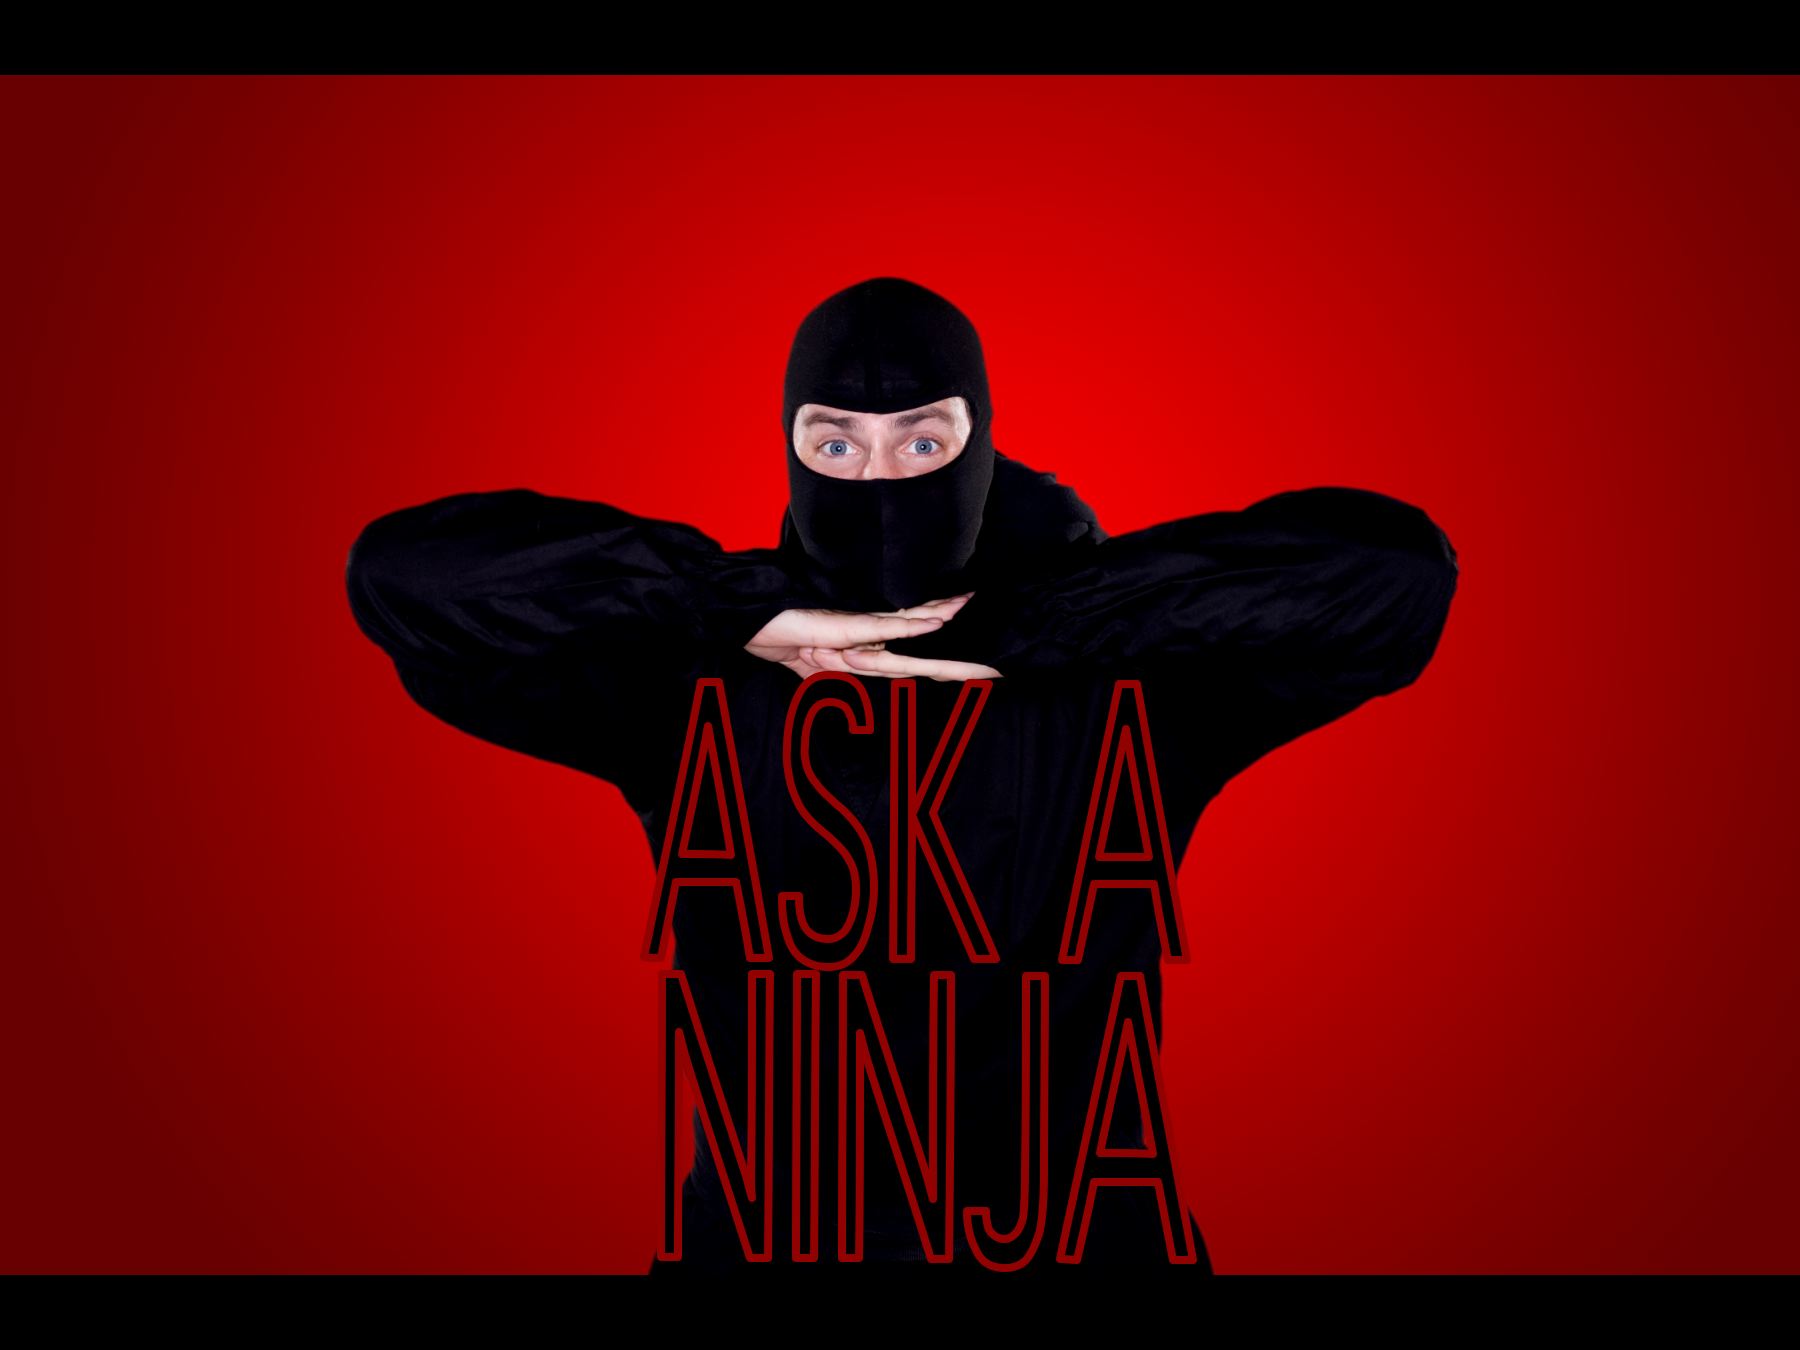 The Ask A Ninja Ninja